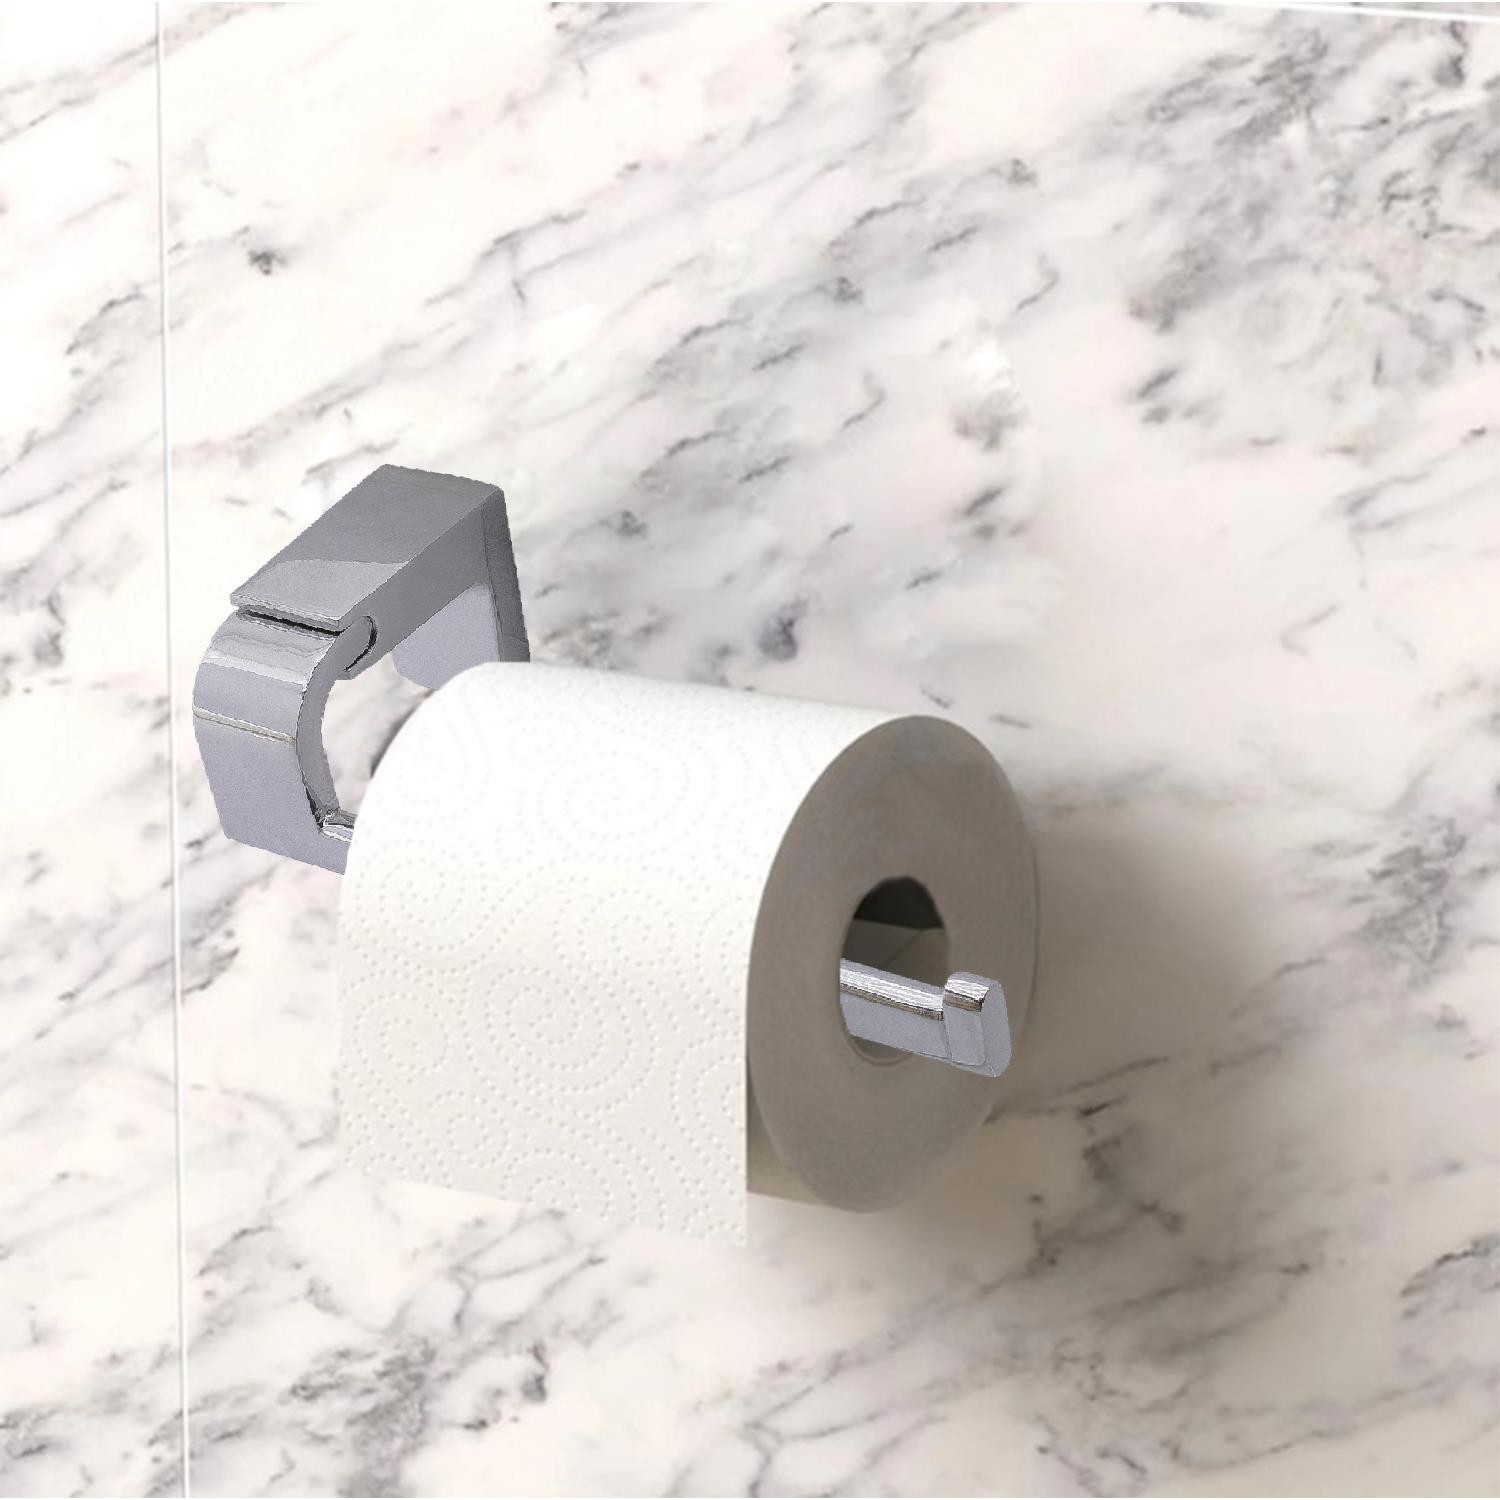 Tuvalet Kağıtlık Aparat Açık WC Kağıt Standı Bez Havluluk Paslanmaz Metal Sağlam Vidalı Krom Renk